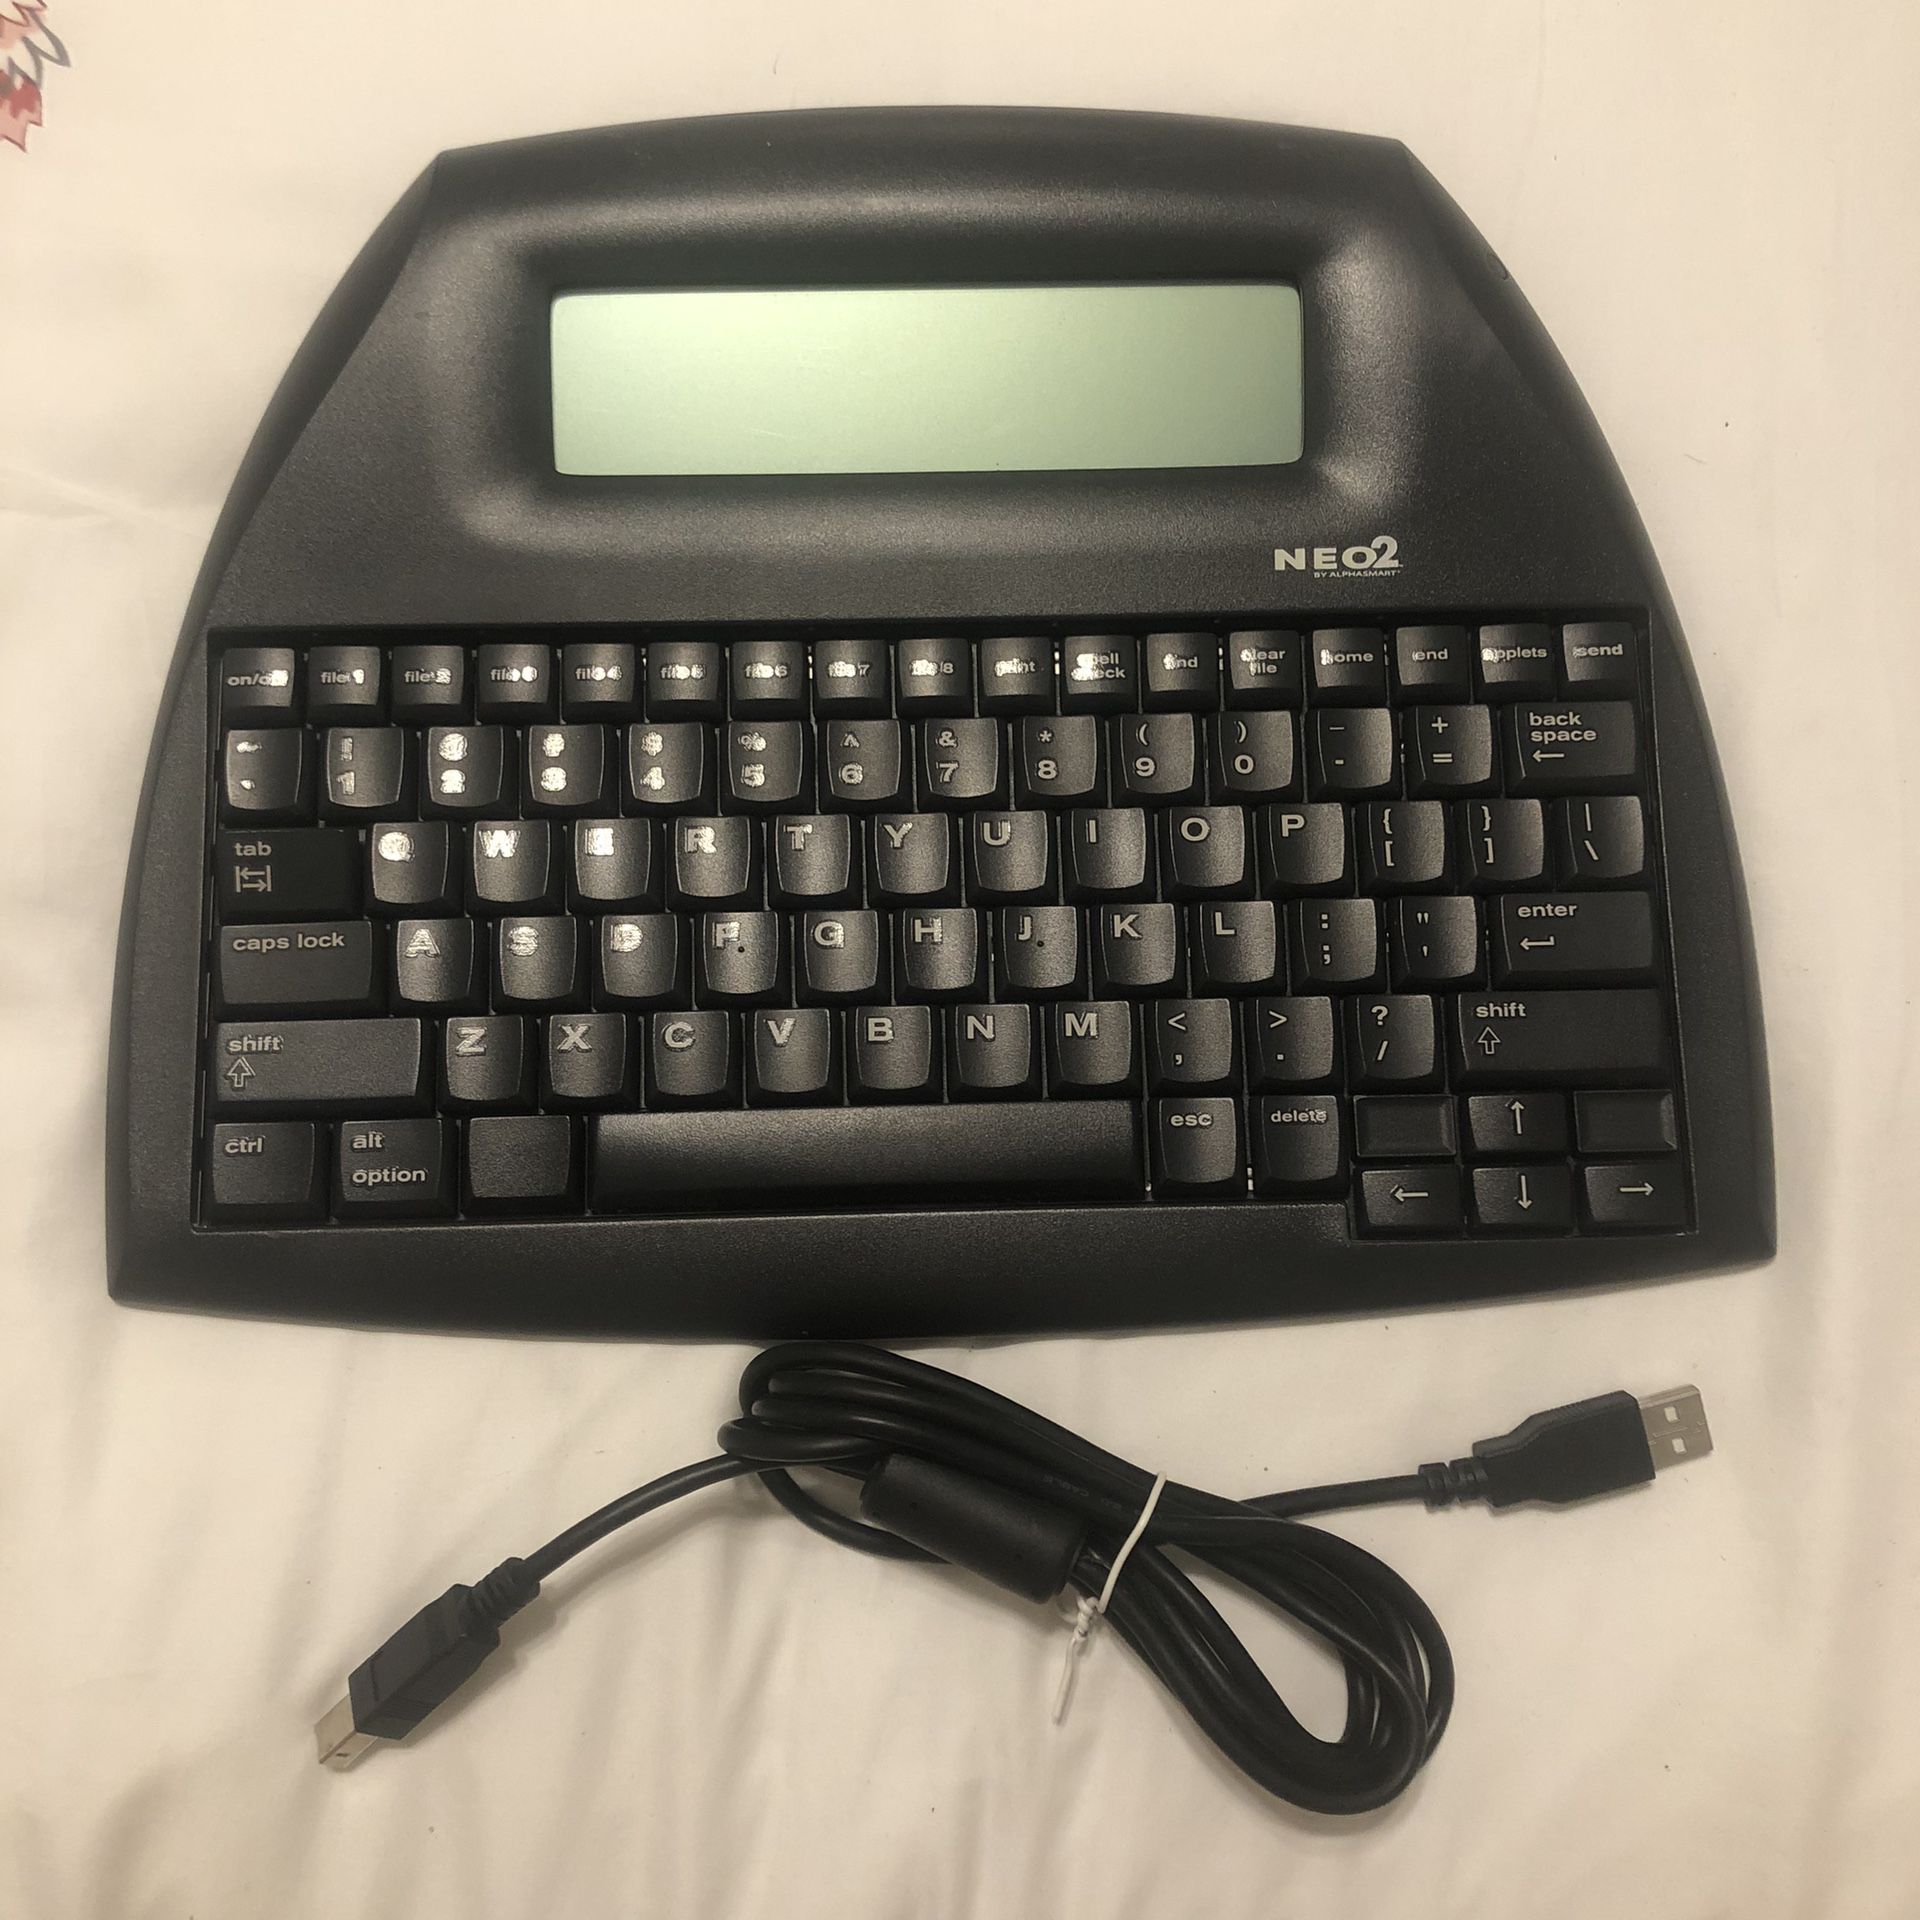 Neo2 Alphasmart Portable Typewriter / Word Processor